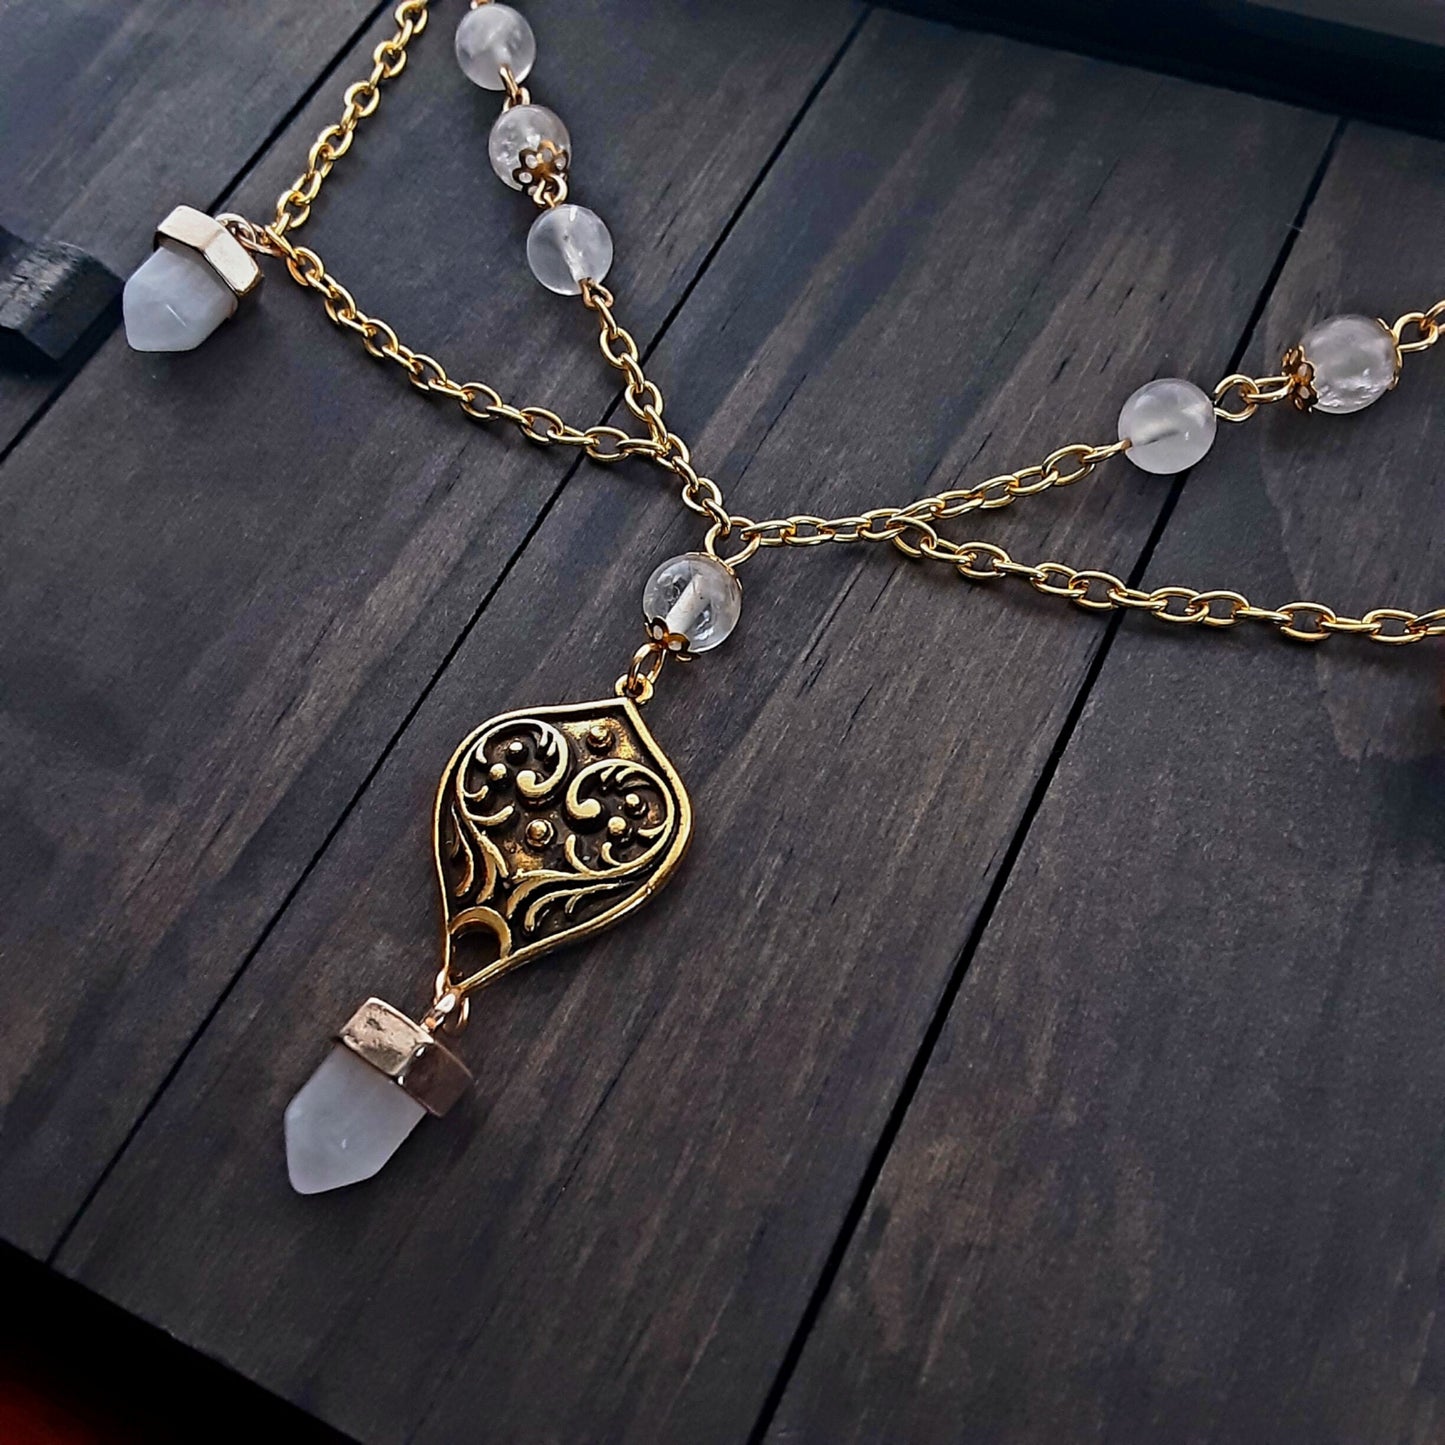 Witchy Wedding Necklace Clear Quartz points Adjustable plus size choker necklace Renaissance Faire jewelry